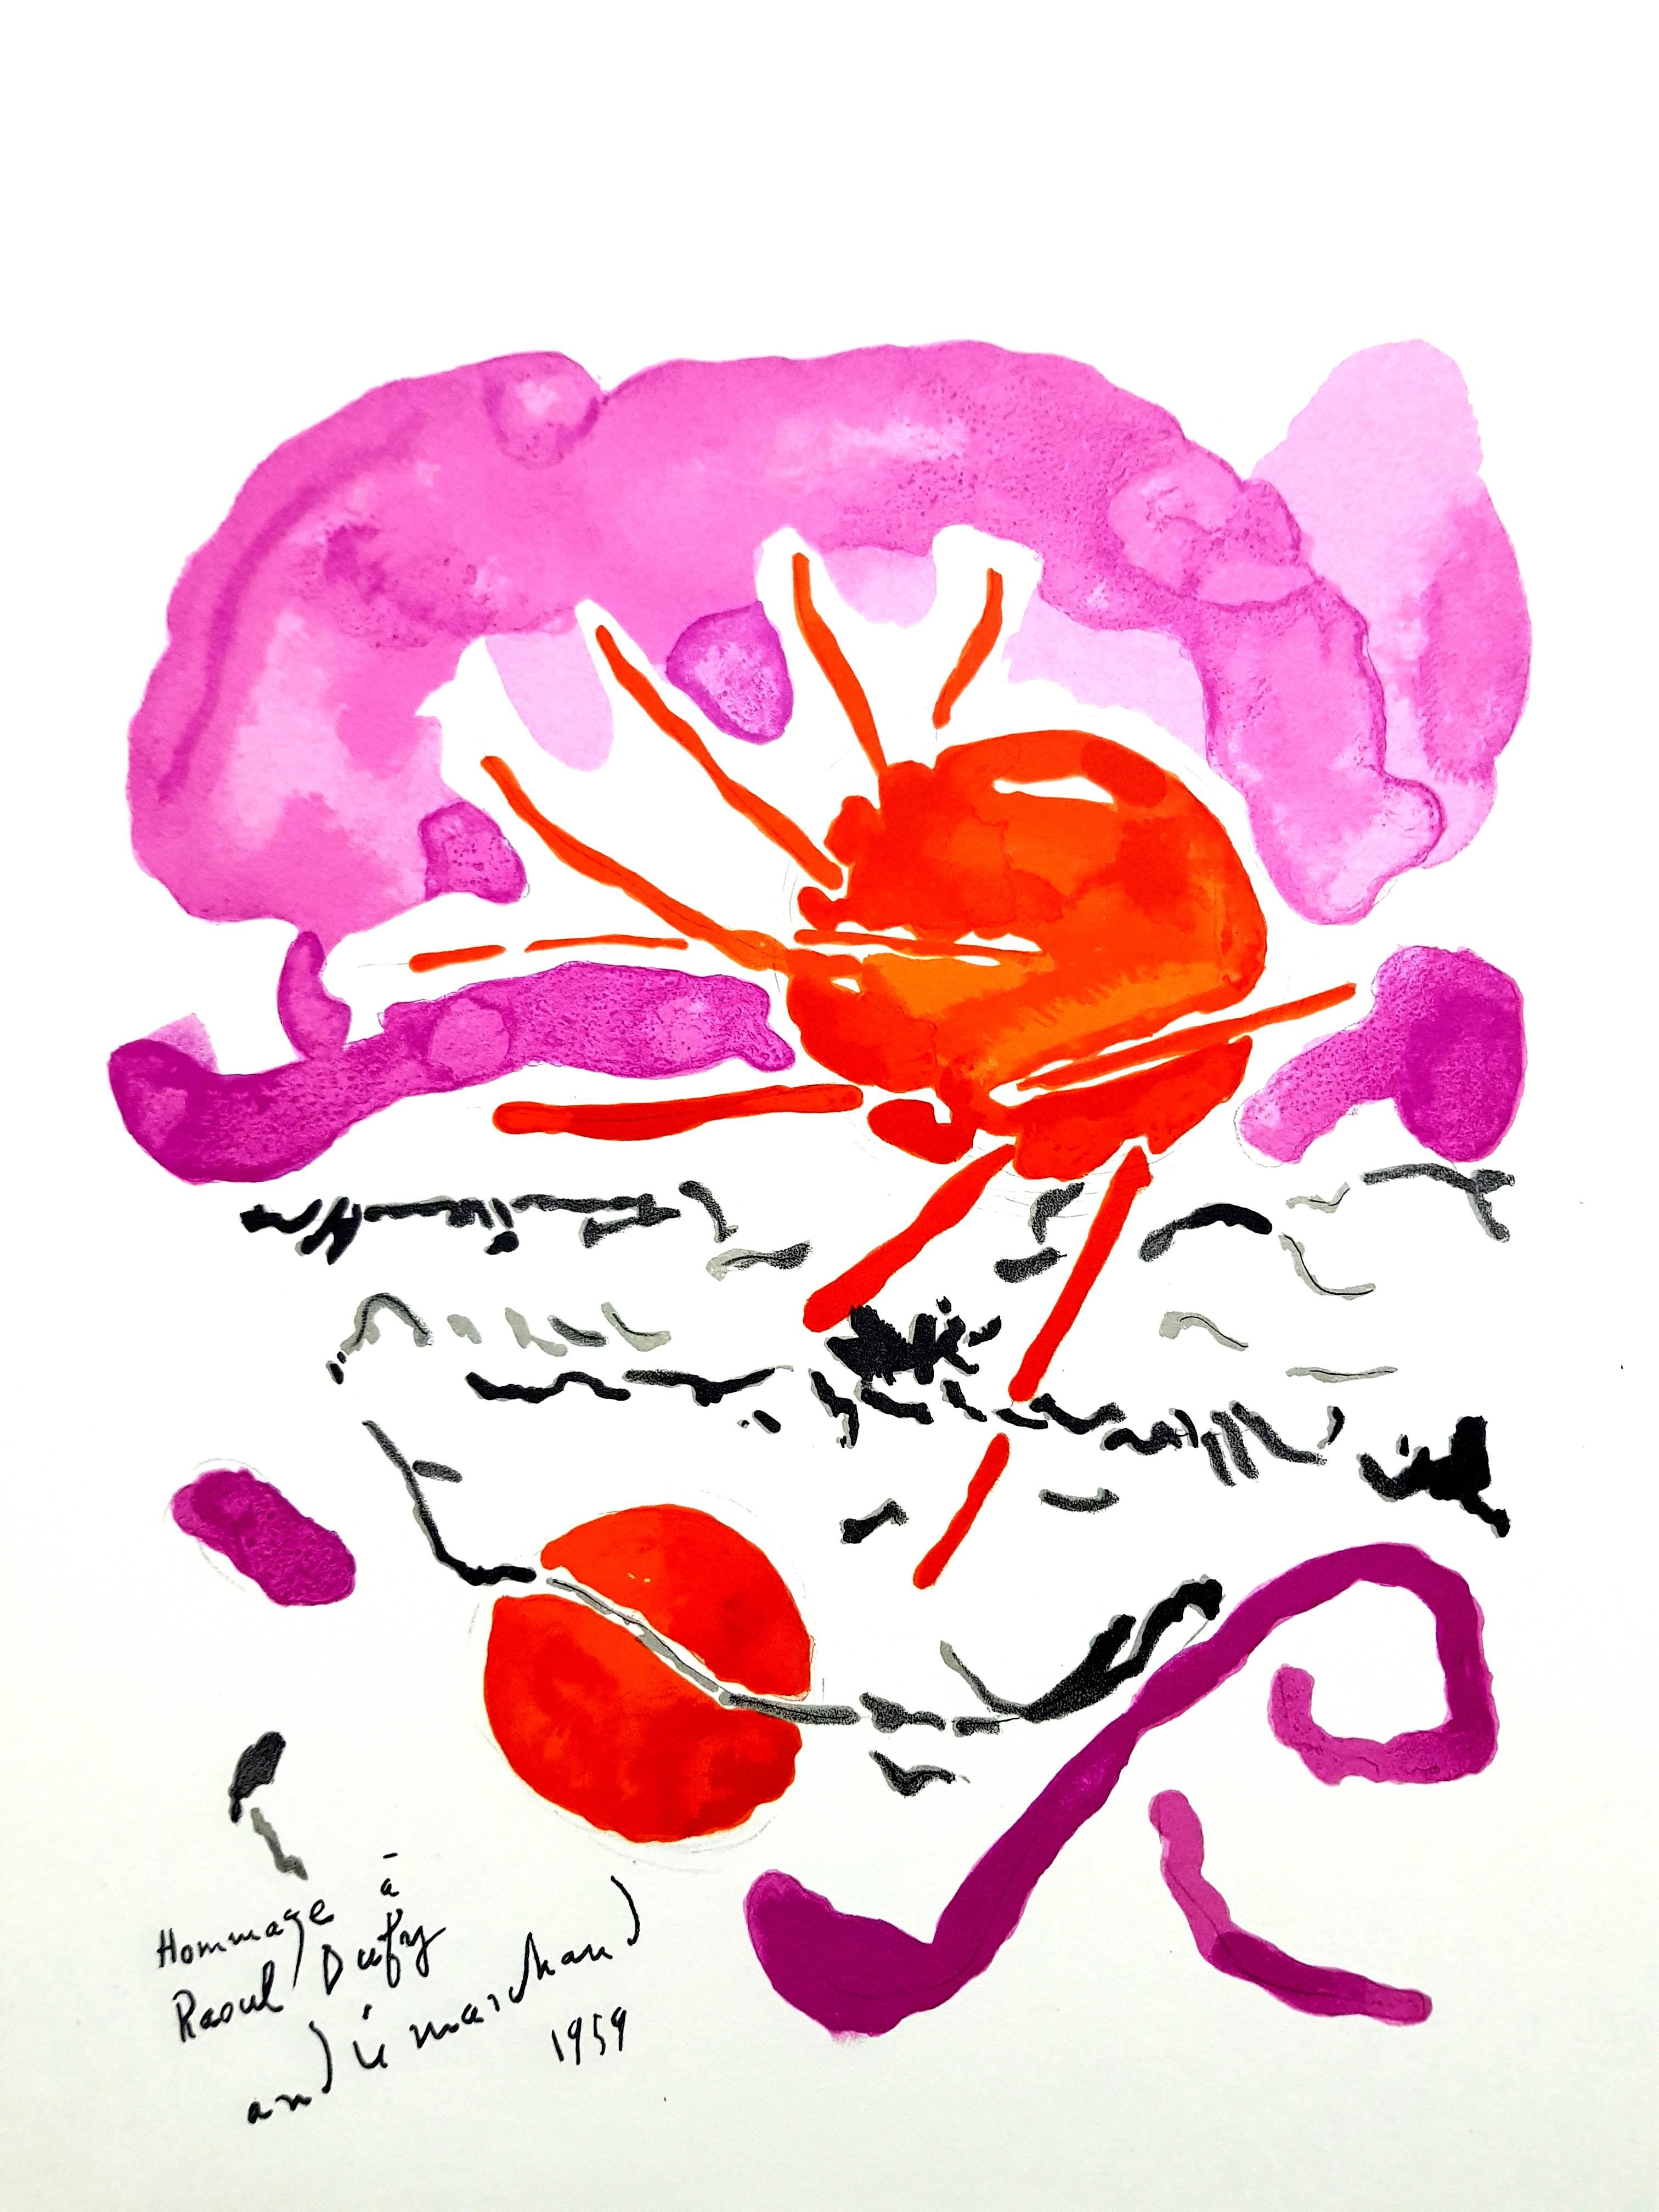 (nach) André Marchand
Lithographie nach einem Aquarell, veröffentlicht in dem Buch "Lettre à mon peintre Raoul Dufy". Paris, Librairie Académique Perrin, 1965.
Gedruckte Unterschrift
Abmessungen: 30 x 24 cm
Zustand: Ausgezeichnet

André